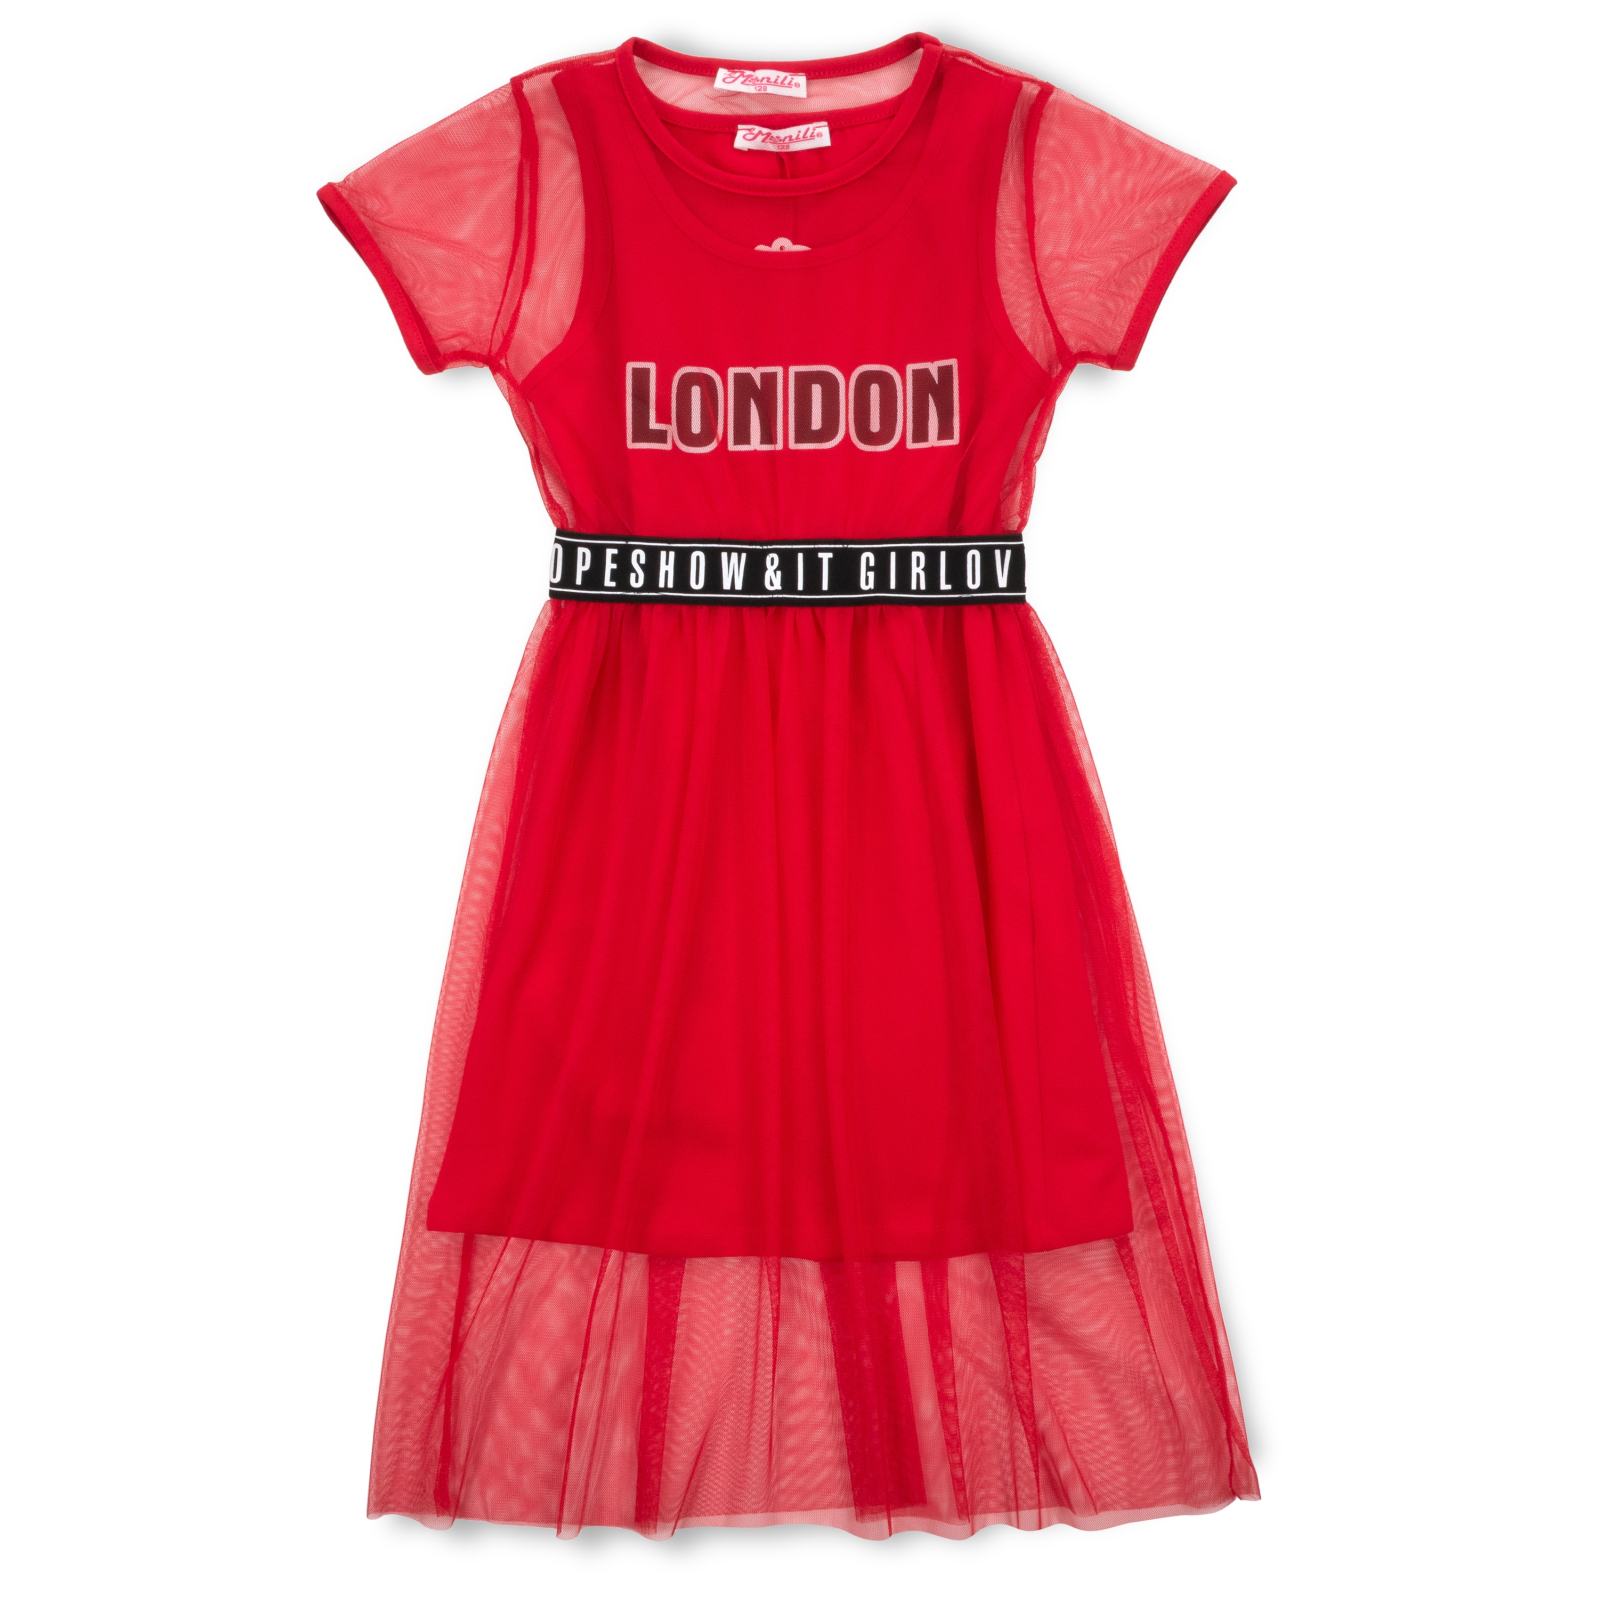 Платье Monili с сеткой (9016-152G-red)